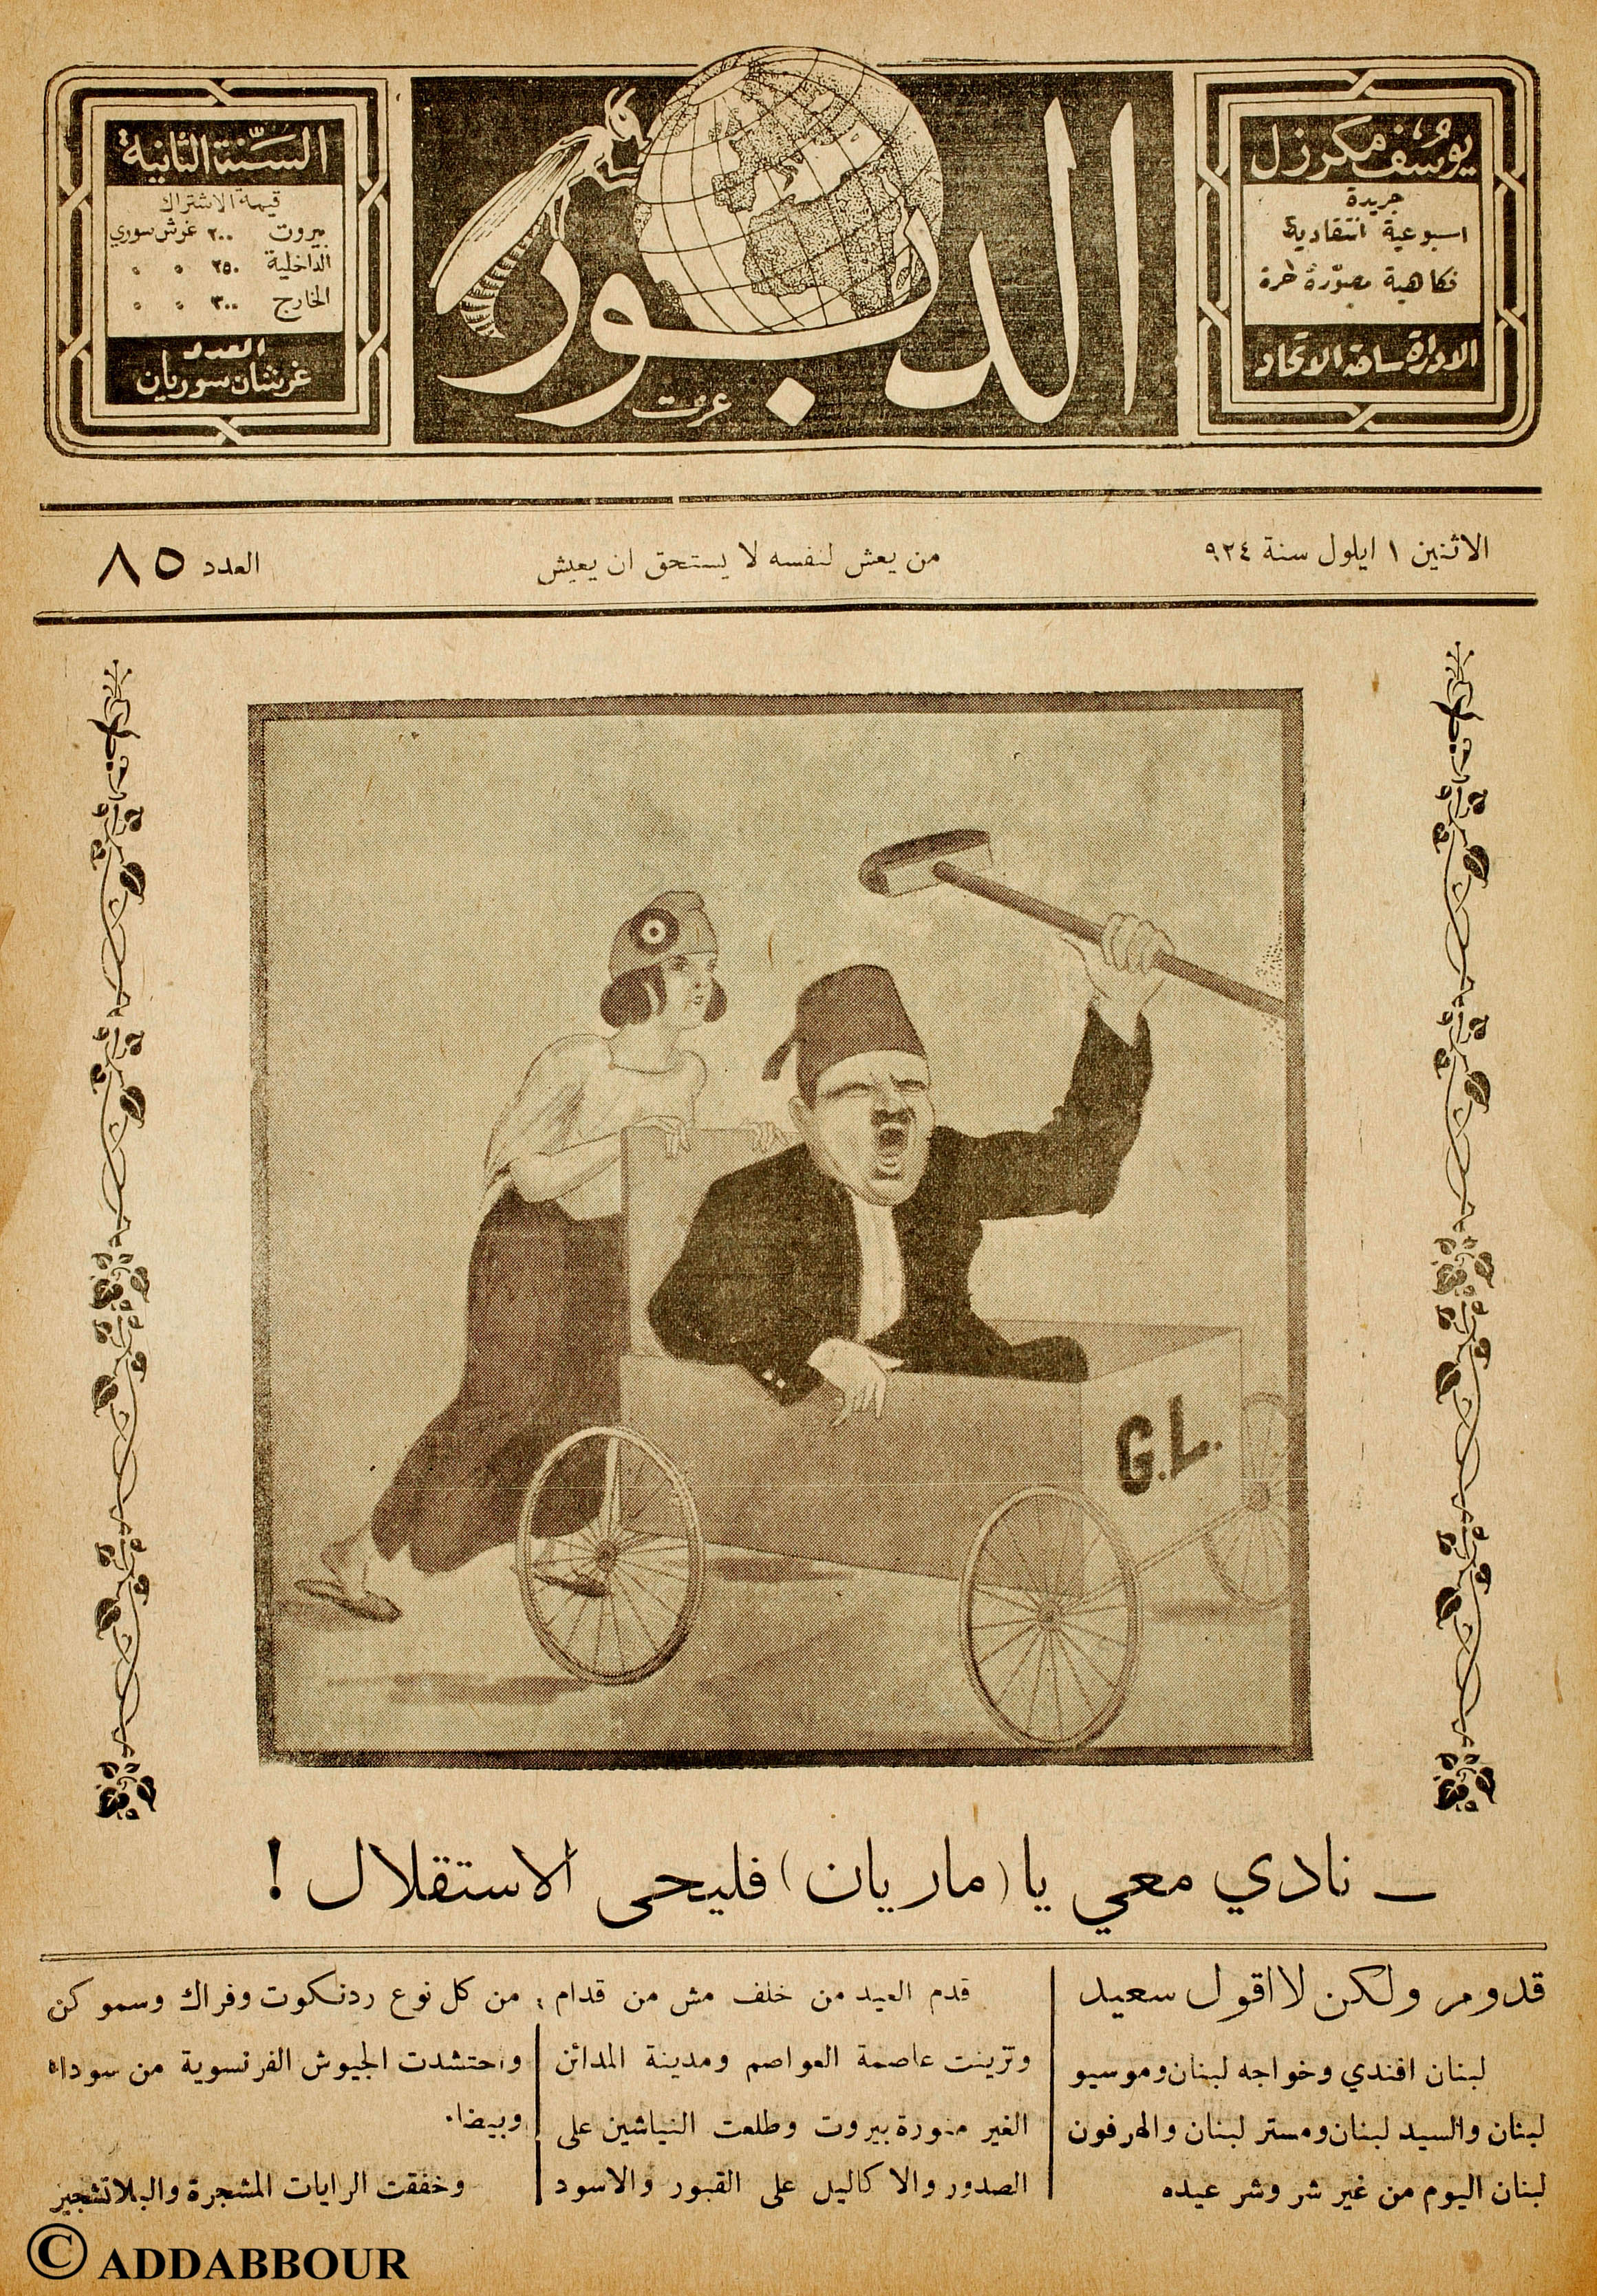 « Chante avec moi, Marianne, vive l’indépendance », titrait Ad-Dabbour en 1924 pour l’anniversaire des quatre ans du Grand-Liban (les initiales « GL » sur la charrette) (Joseph Moukarzel)